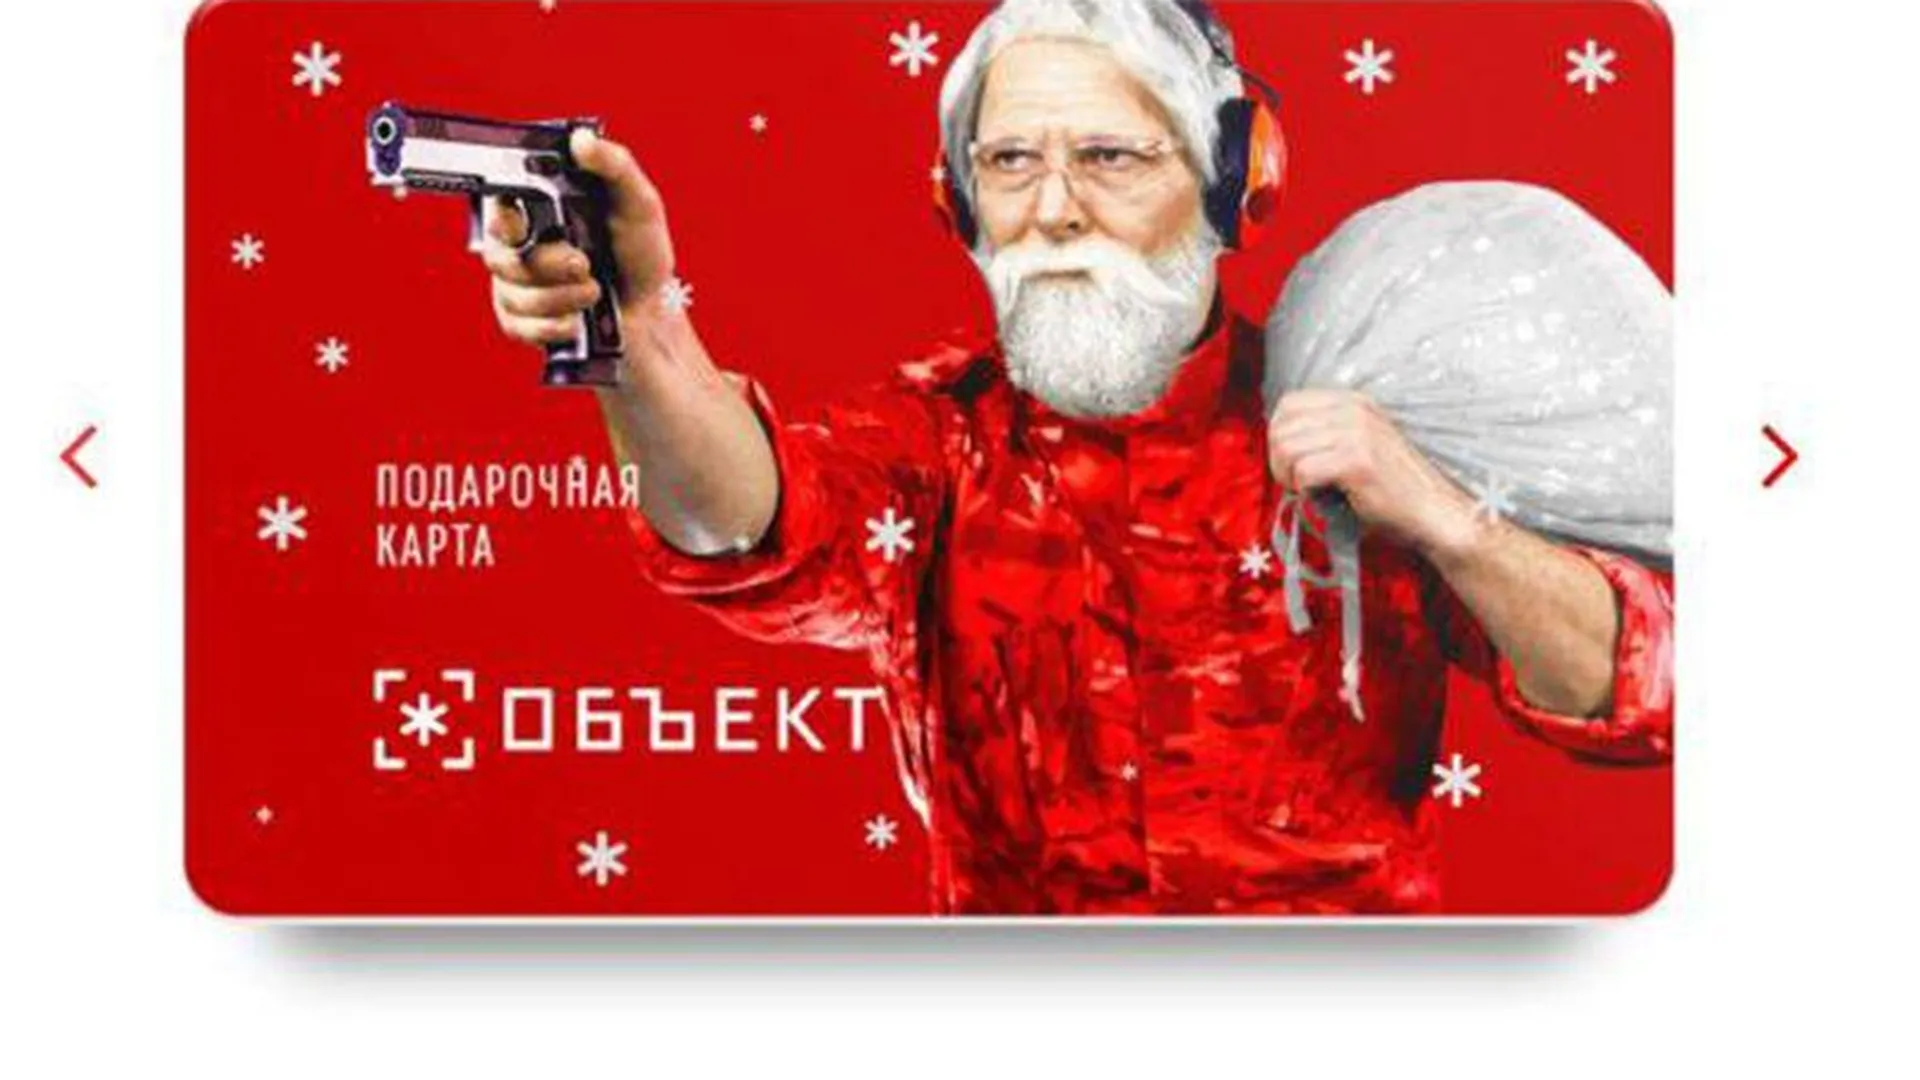 Вооруженный Санта Клаус: в Подмосковье продают необычные сертификаты в стрелковый клуб